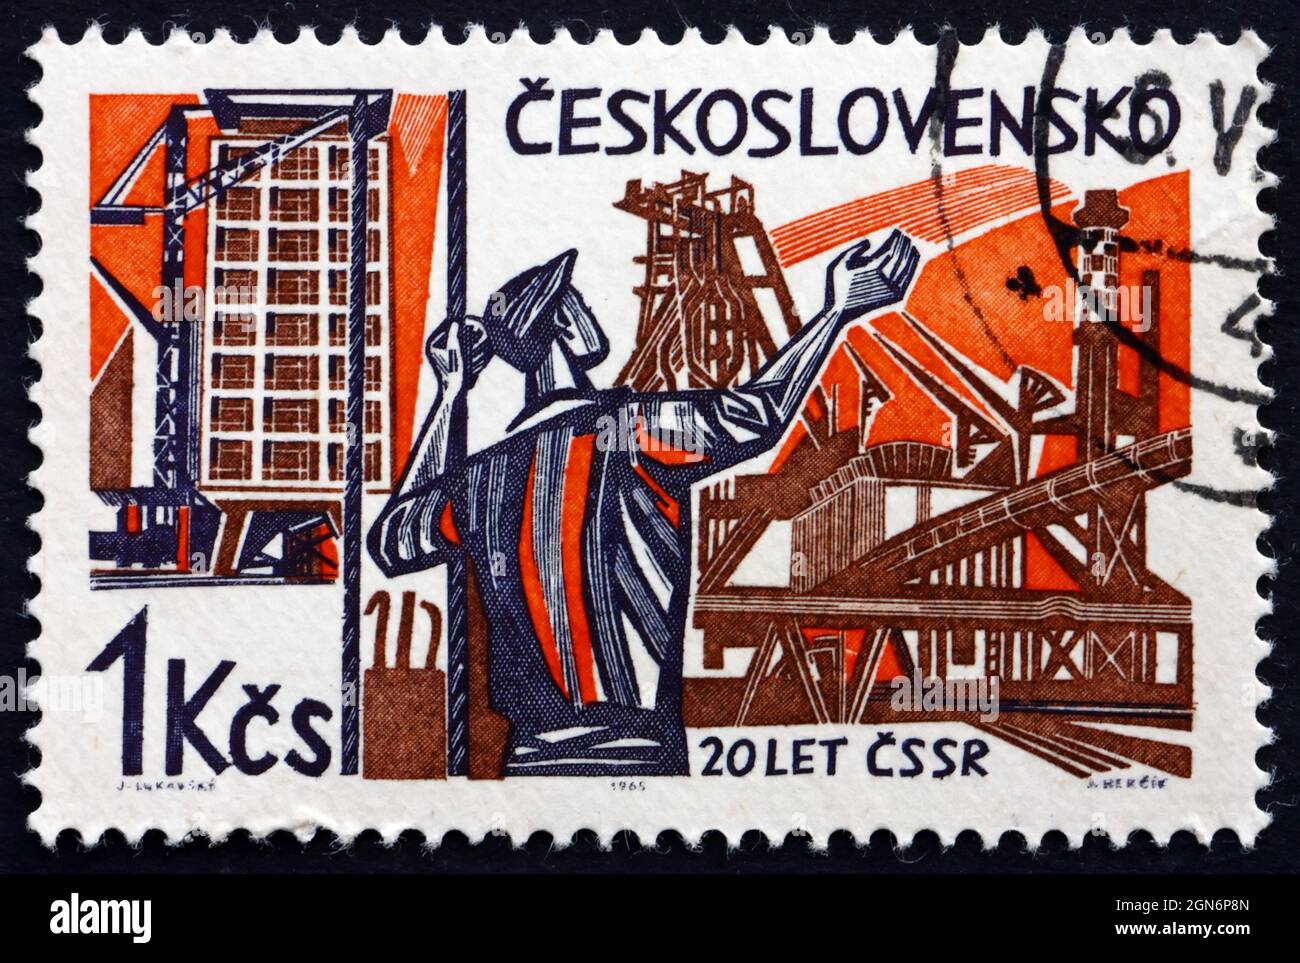 TSCHECHOSLOWAKEI - UM 1965: Eine in der Tschechoslowakei gedruckte Marke zeigt Arbeiter und Neubauten, 20. Jahrestag der Befreiung von den Nazis, Stockfoto